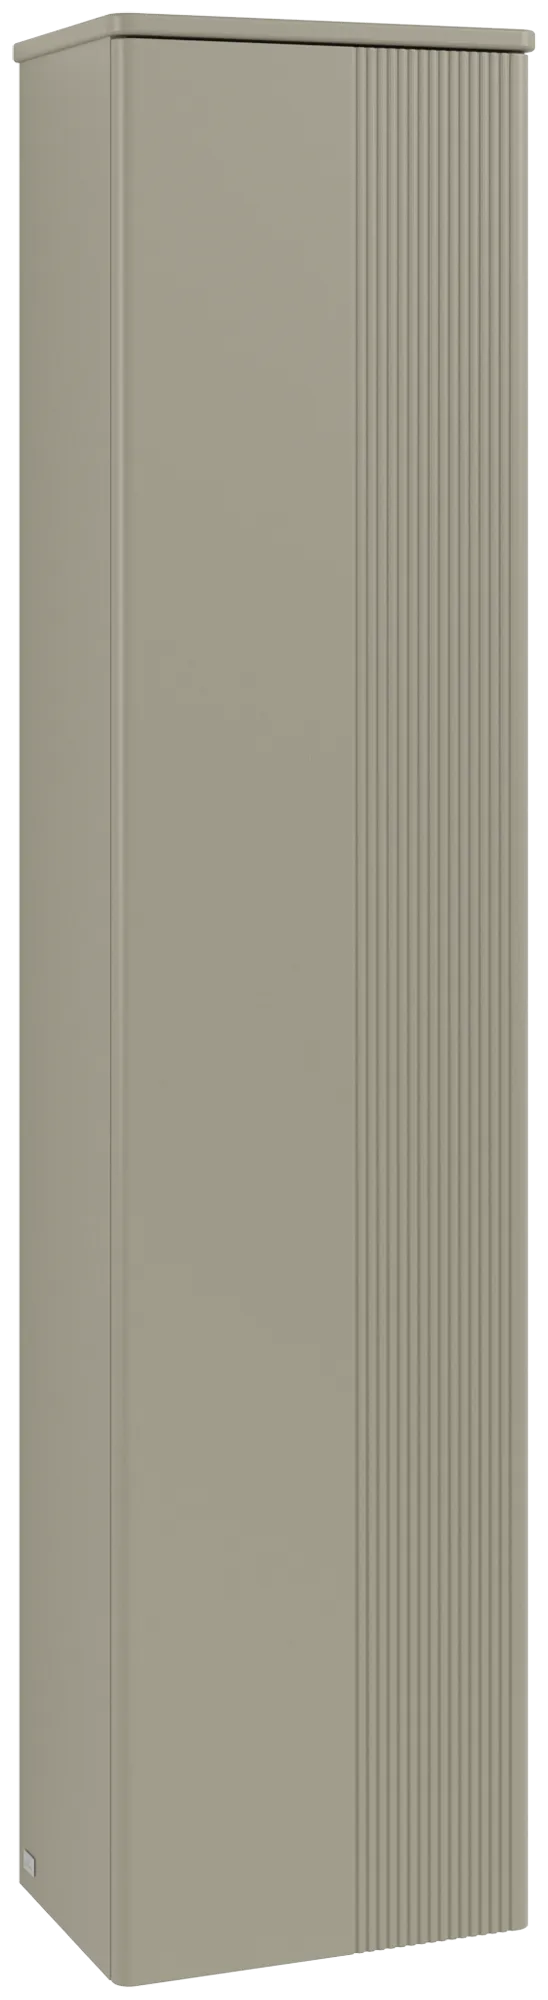 Bild von VILLEROY BOCH Antao Hochschrank, 1 Tür, 414 x 1719 x 287 mm, Front mit Struktur, Stone Grey Matt Lacquer / Stone Grey Matt Lacquer #K45100HK